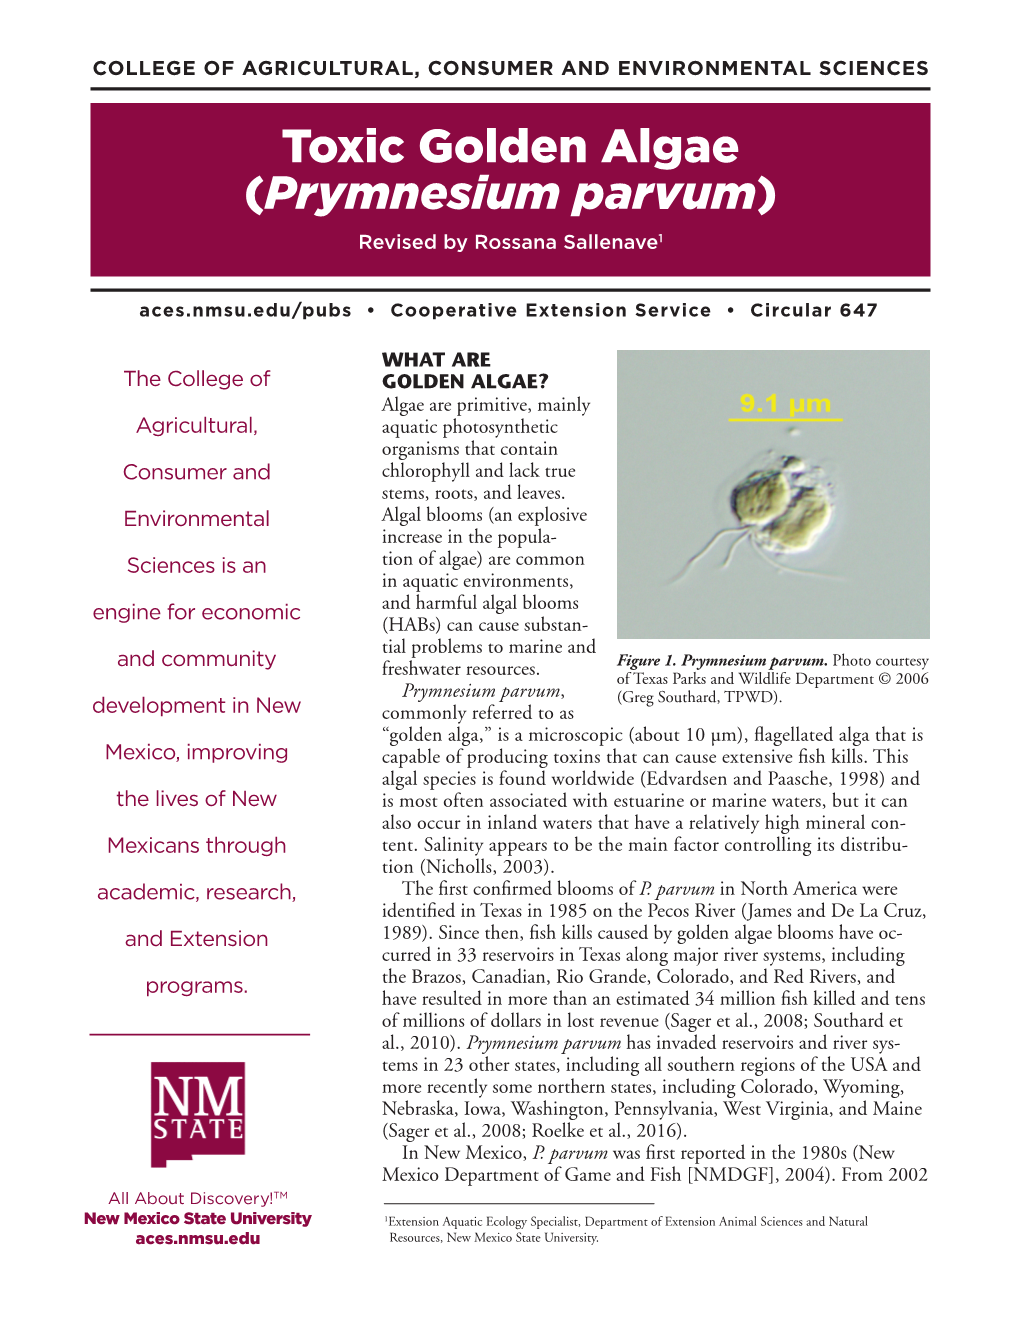 Toxic Golden Algae (Prymnesium Parvum)